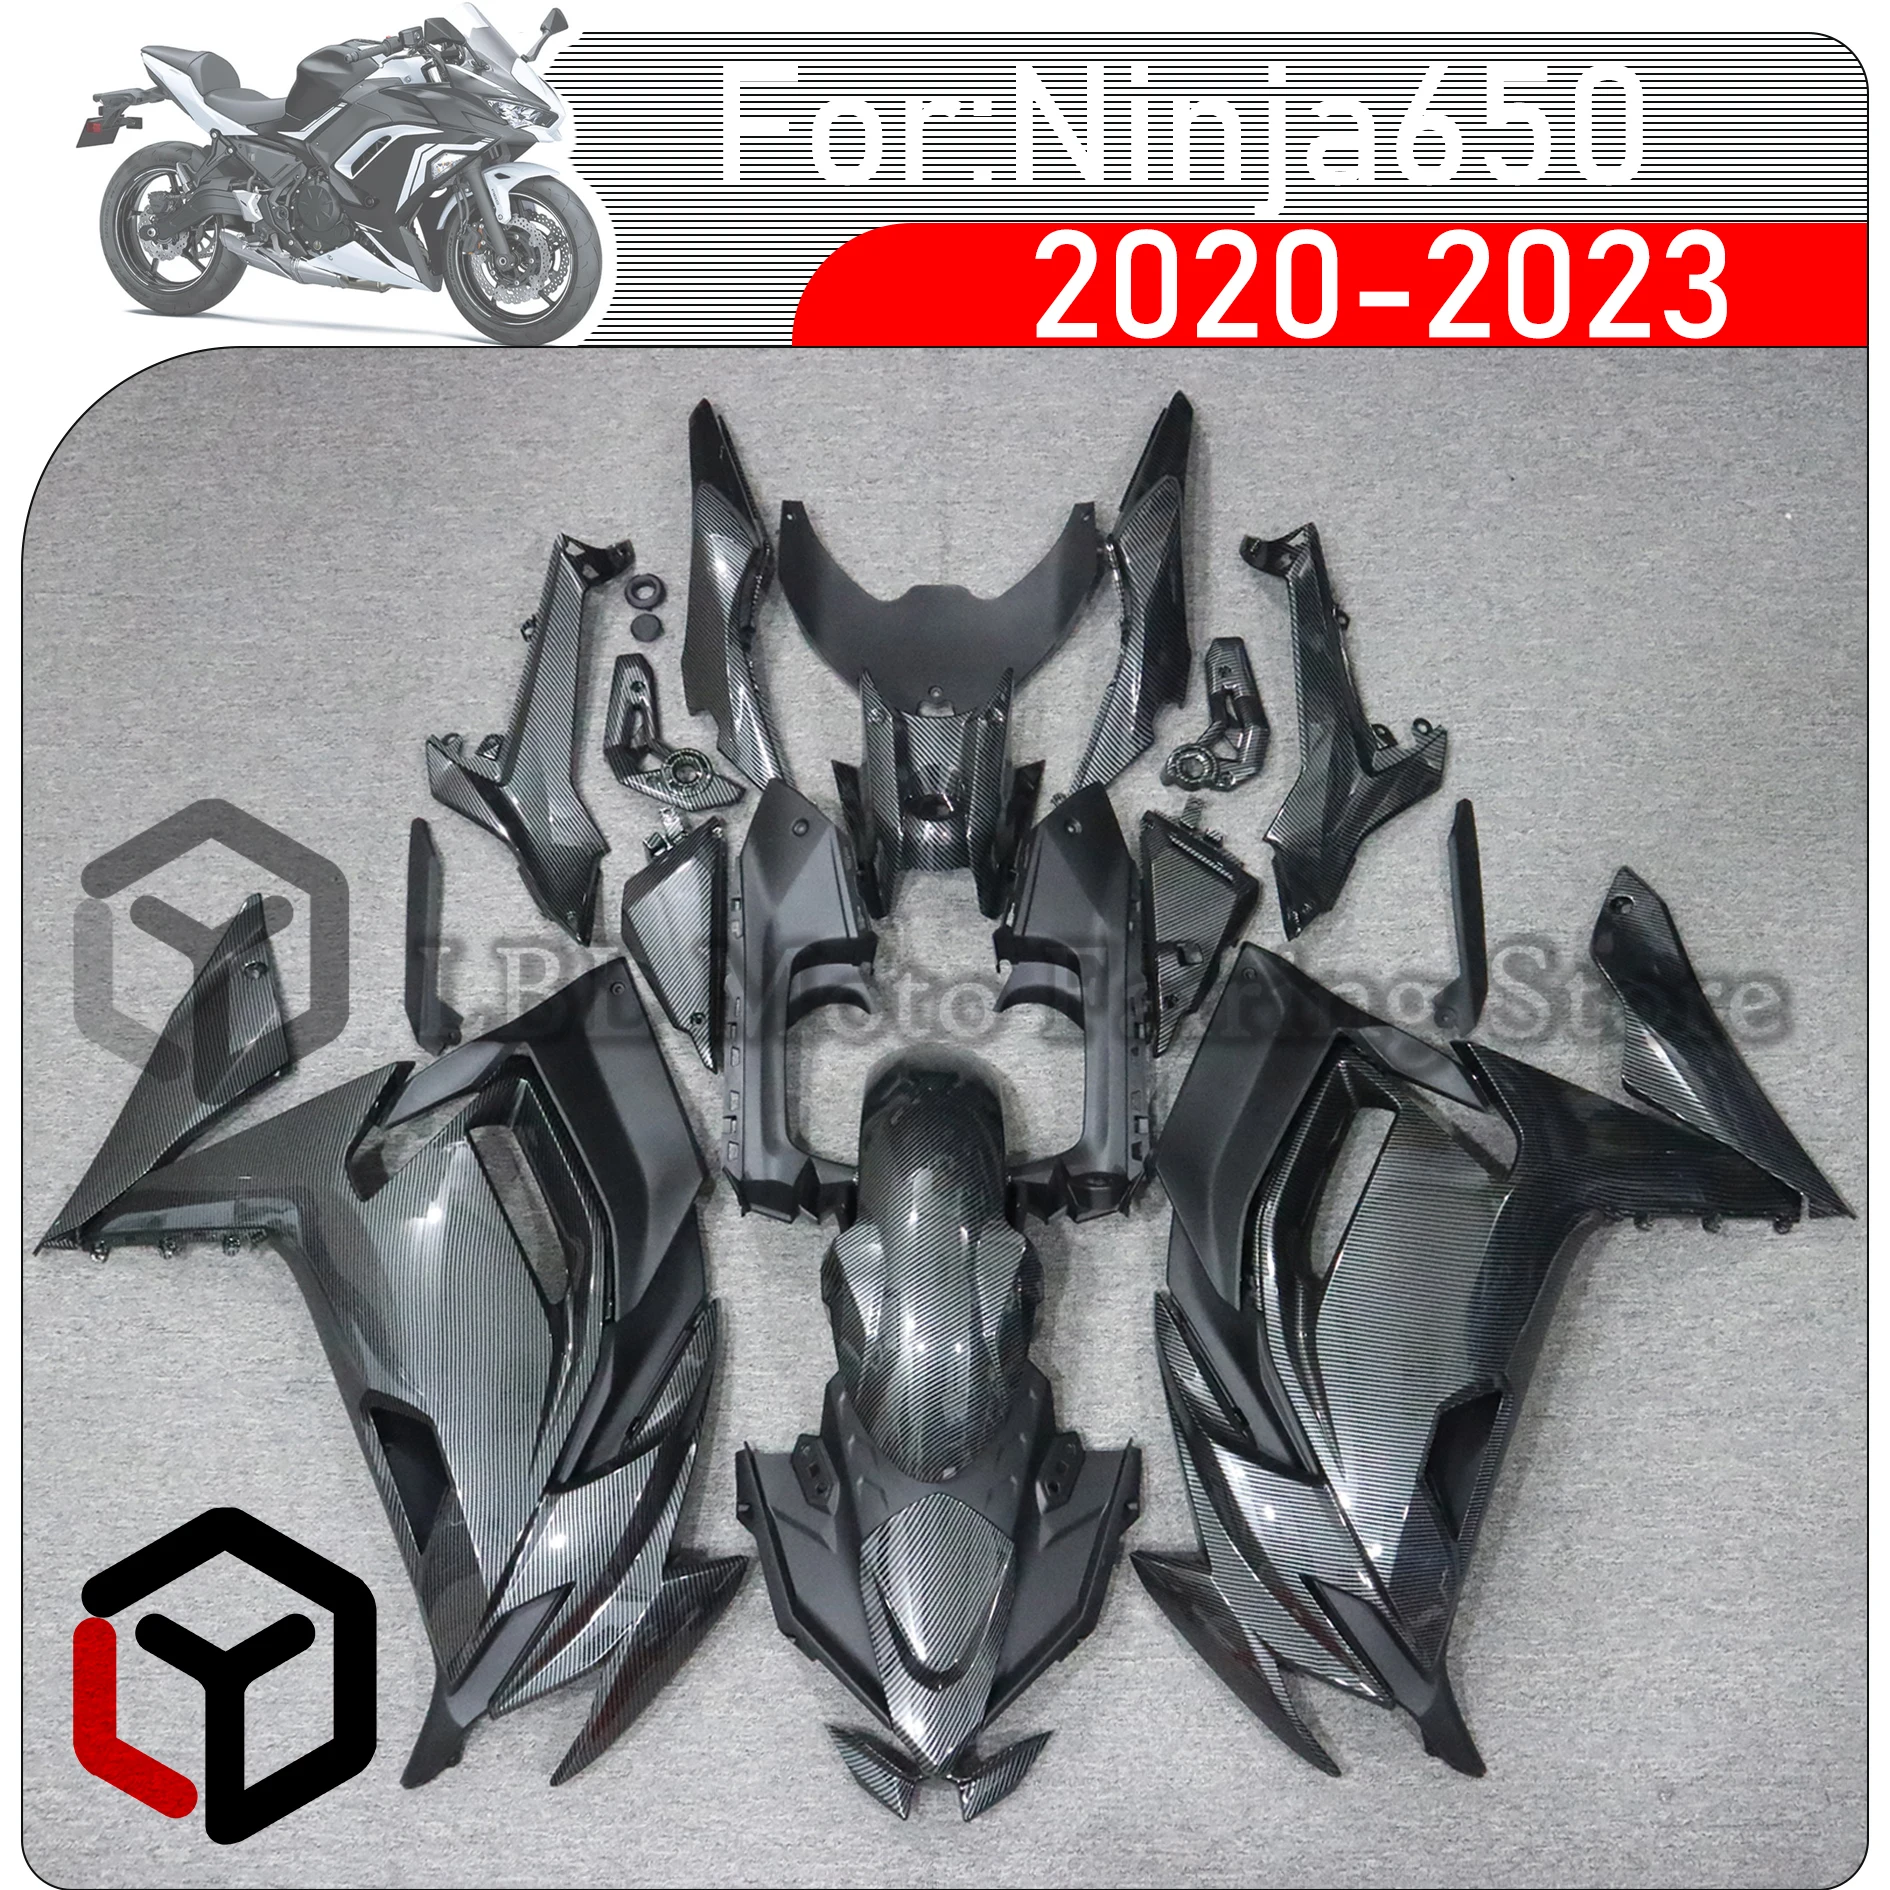 

Комплект обтекателей для мотоцикла, подходит для KAWASAKI Ninja650 2020 2021 2022 2023 Комплект кузова высокого качества ABS Инжекция полный обтекатель